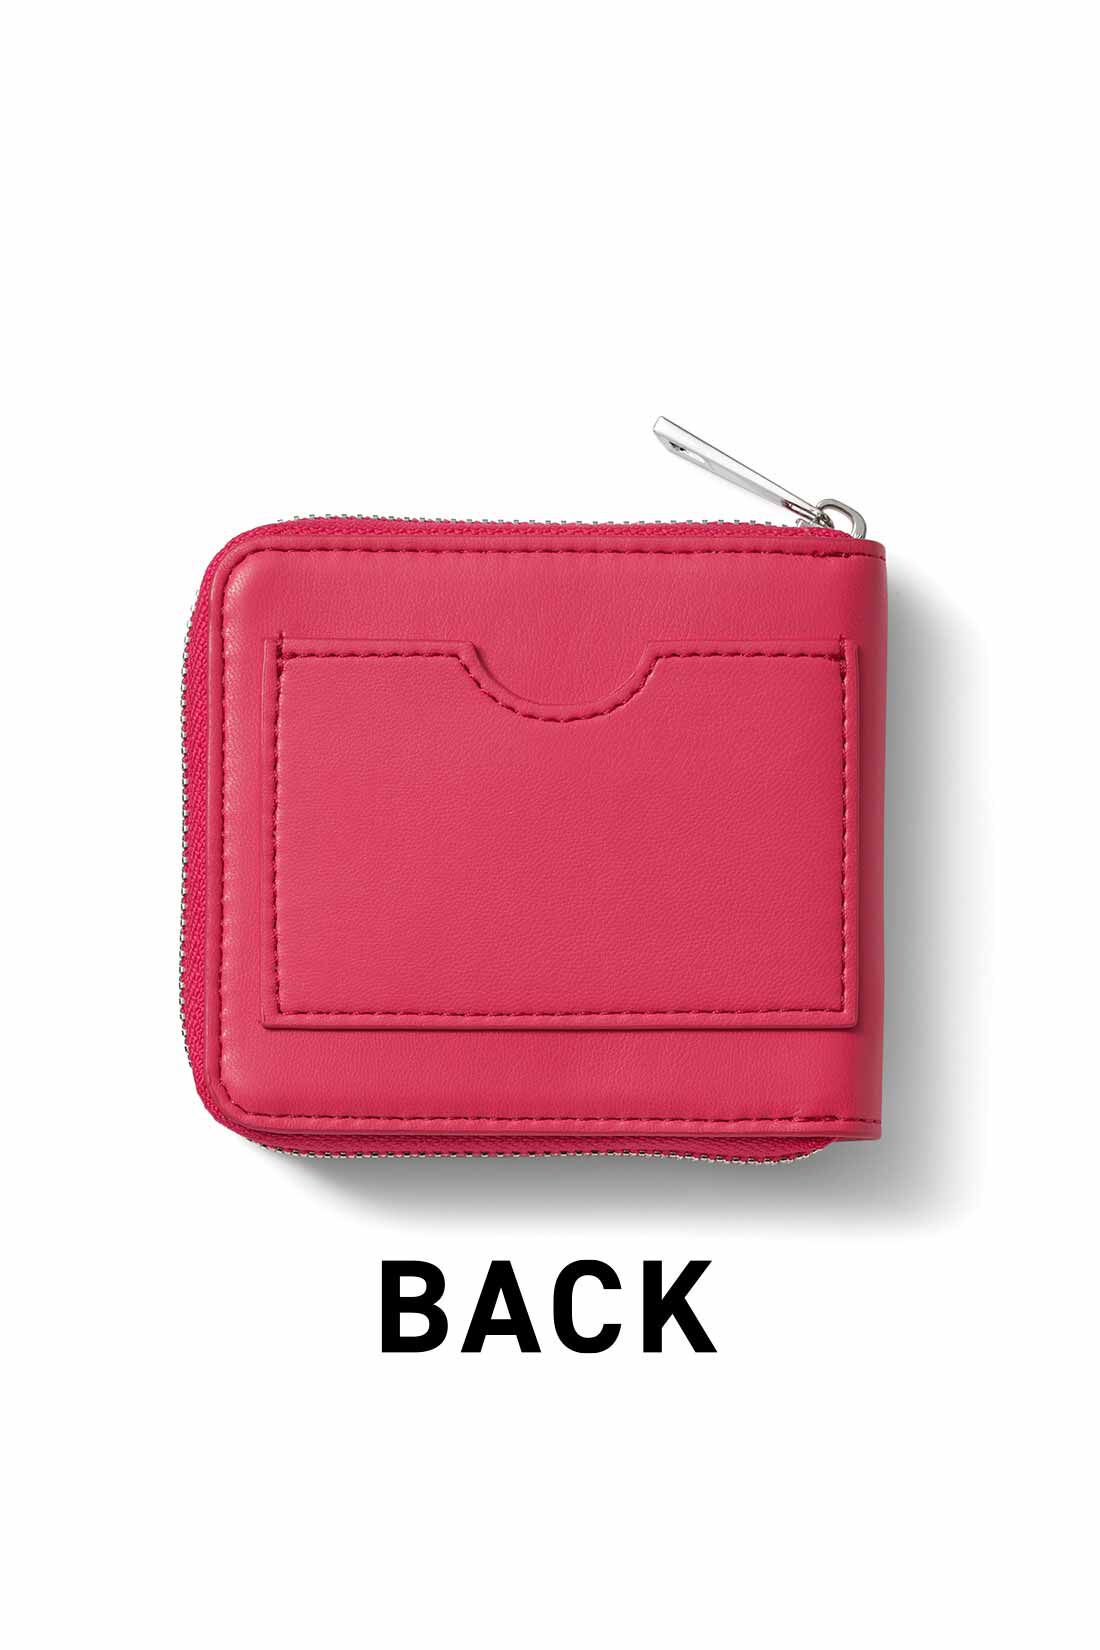 Live in  comfort|リブ イン コンフォート はまじとコラボ ピンクリボン 手のひらサイズでたっぷり入る！ 大人ピンクの二つ折り財布|後ろにはICカードが収まるポケット付き。